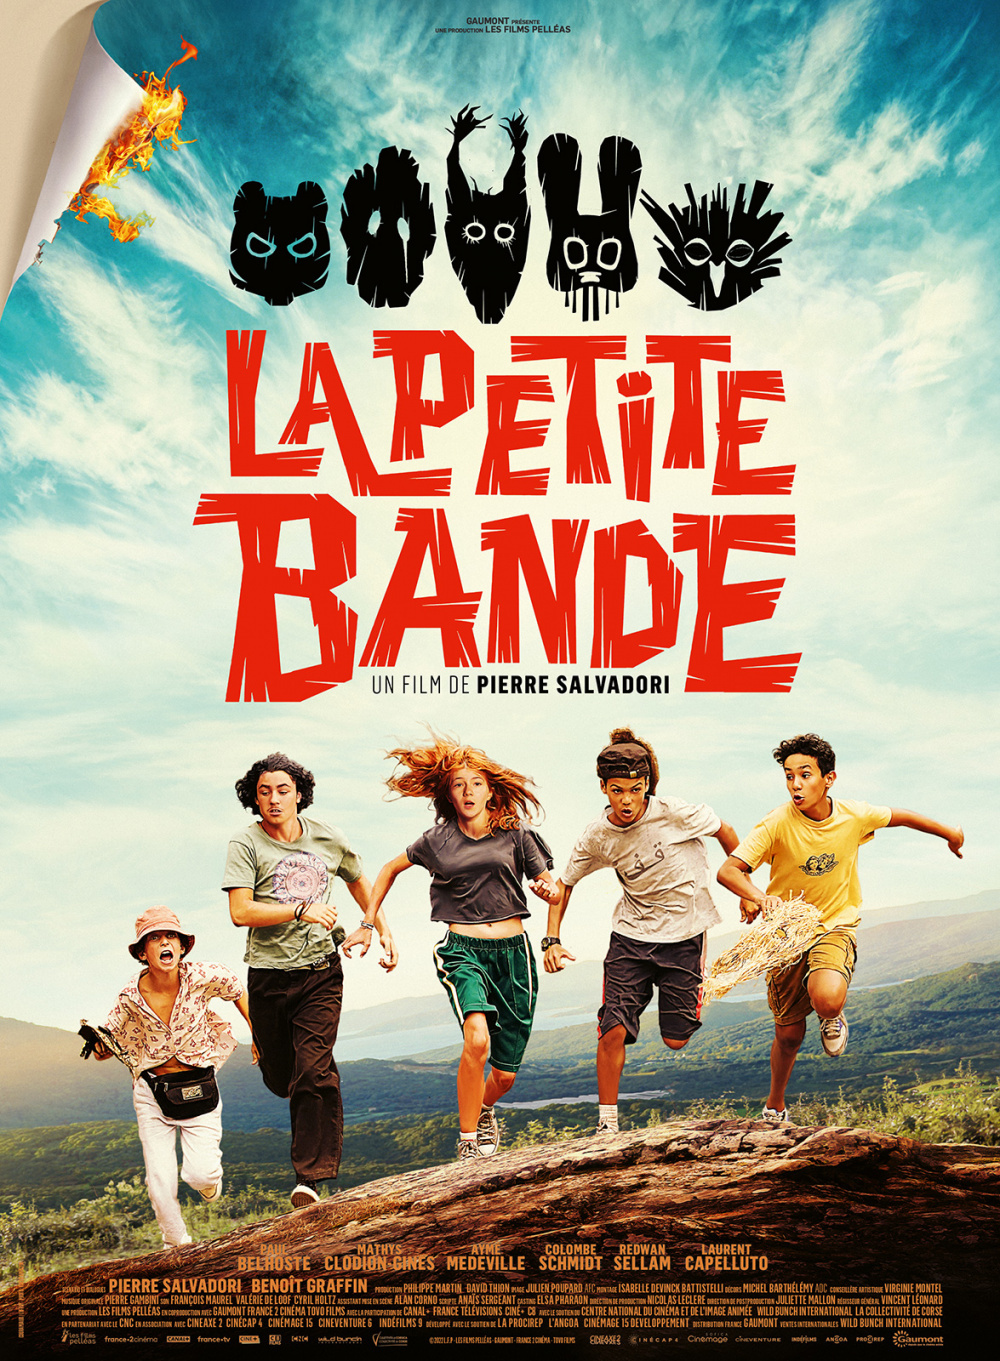 La Petite Bande | Kids Cinéma